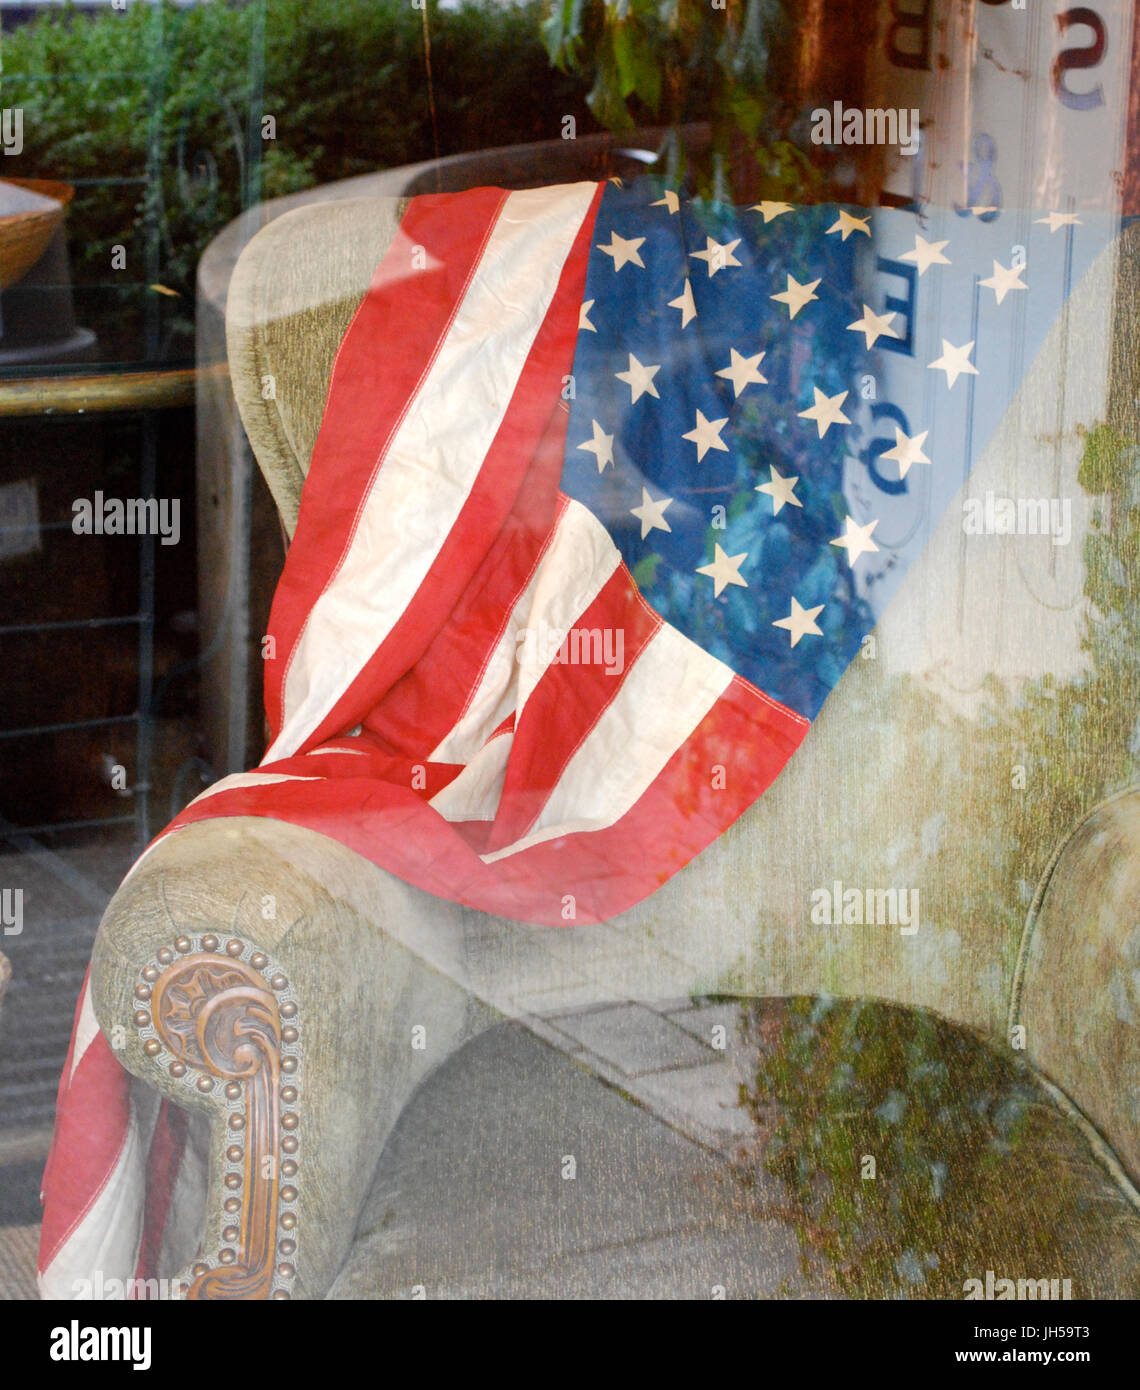 Drapeau américain drapé sur une chaise vintage - quatrième de juillet présentation Fenêtre Bainbridge Island, WA. USA Banque D'Images